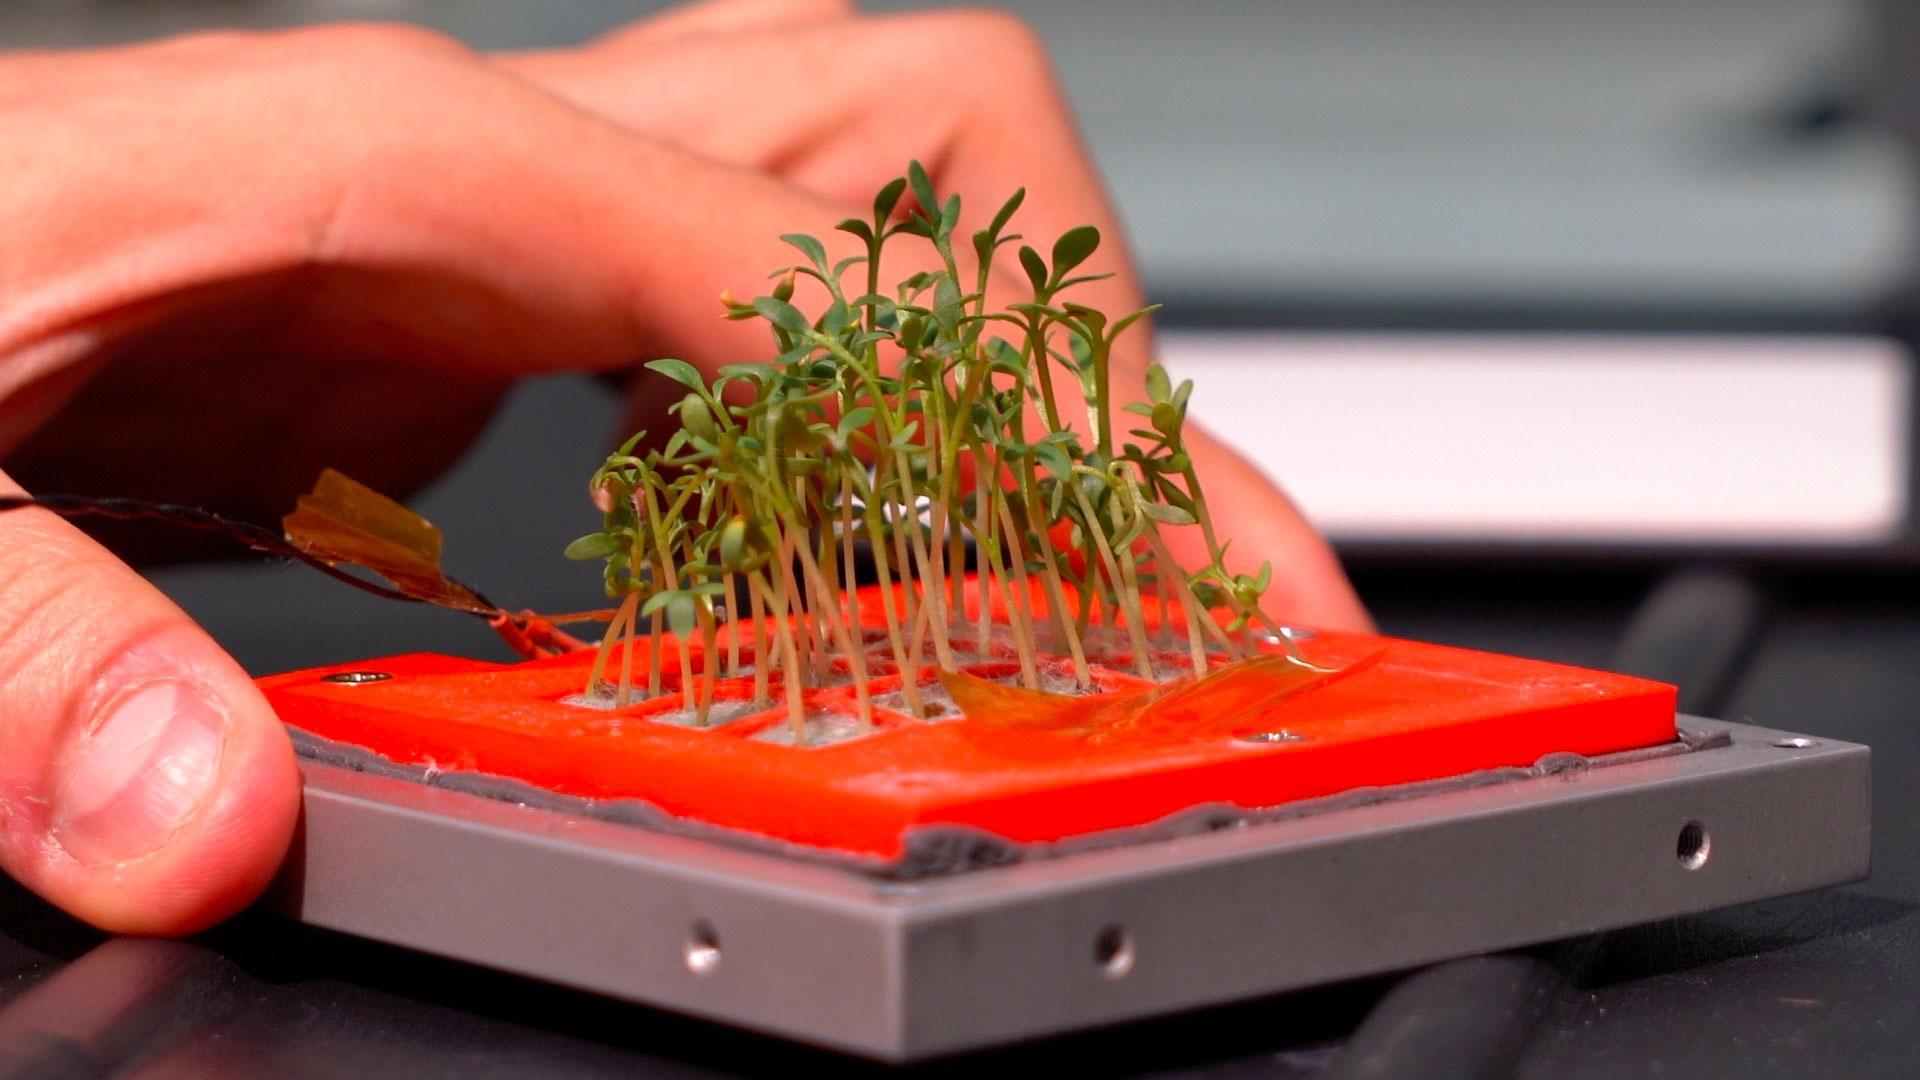 Cubesat: Presso il laboratorio di citogenomica del centro ENEA Casaccia i ricercatori analizzano le piante a valle di un test di crescita nel cubesat. Nella foto vi è la base e la piantina in primo piano tenute nella mano dal ricercatore